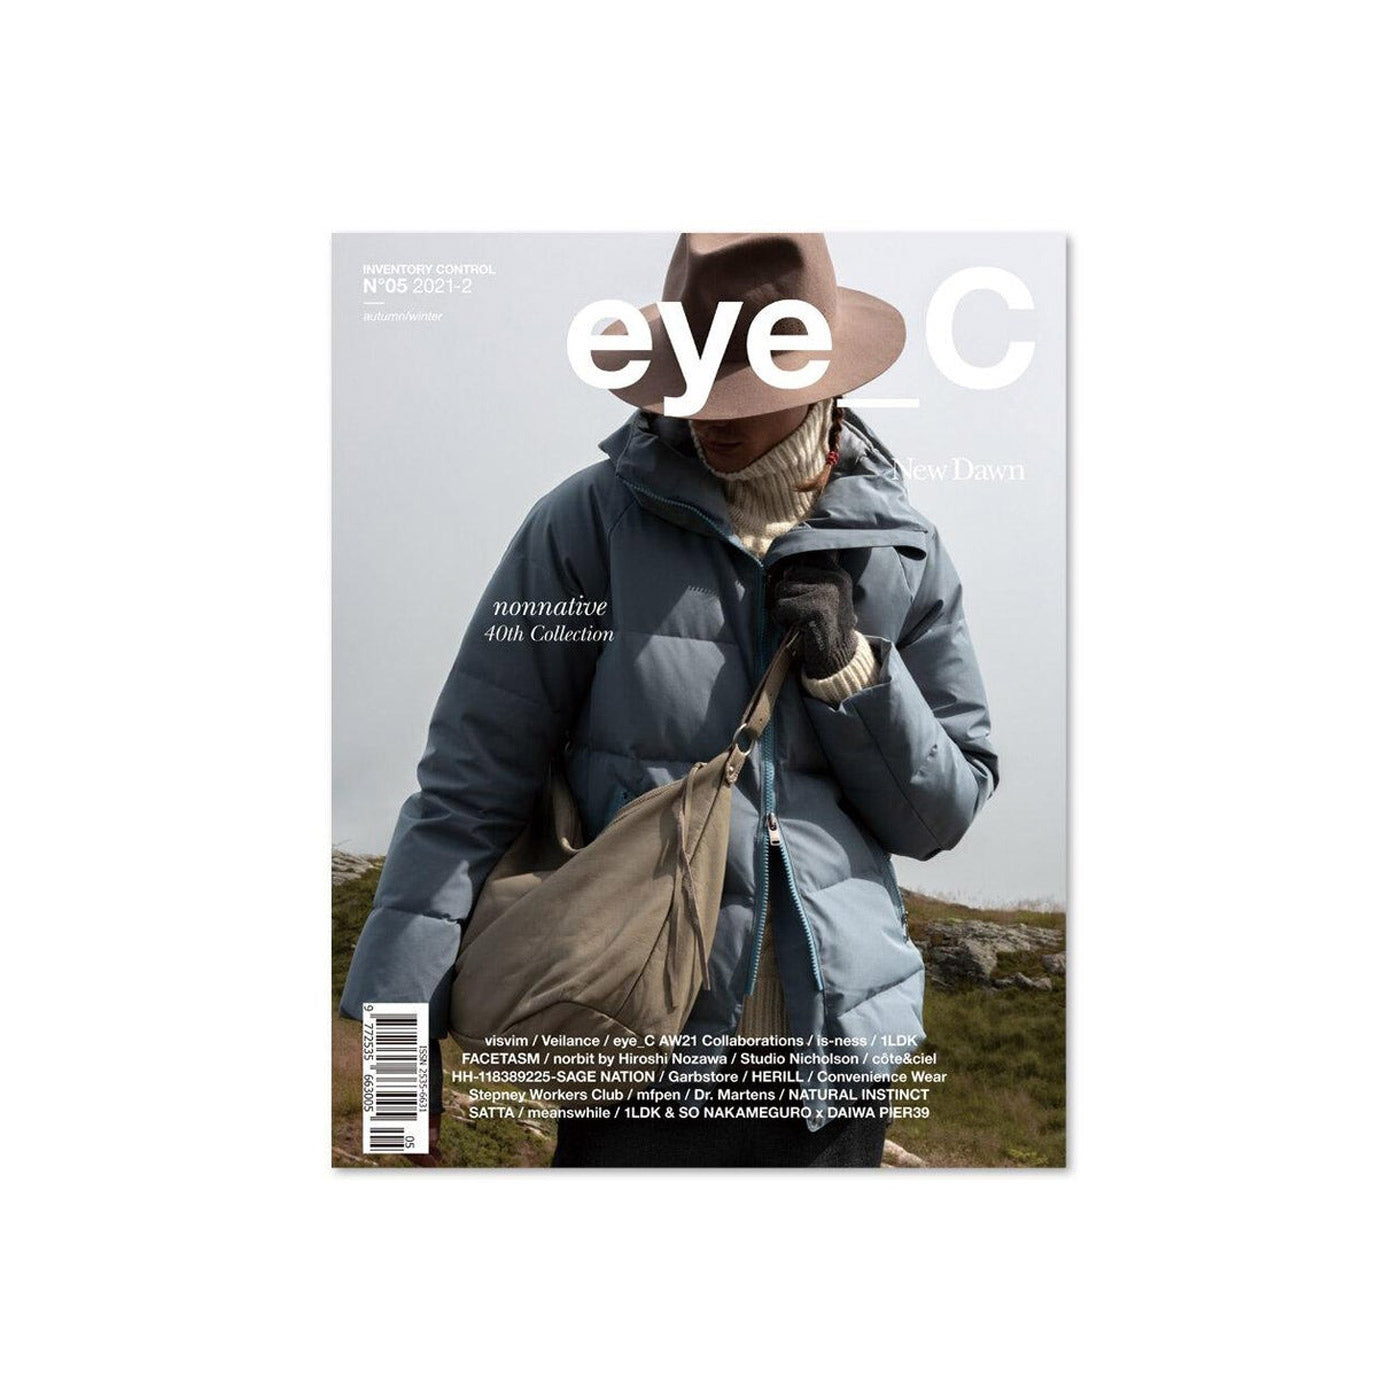 Image of eye C magazine cover